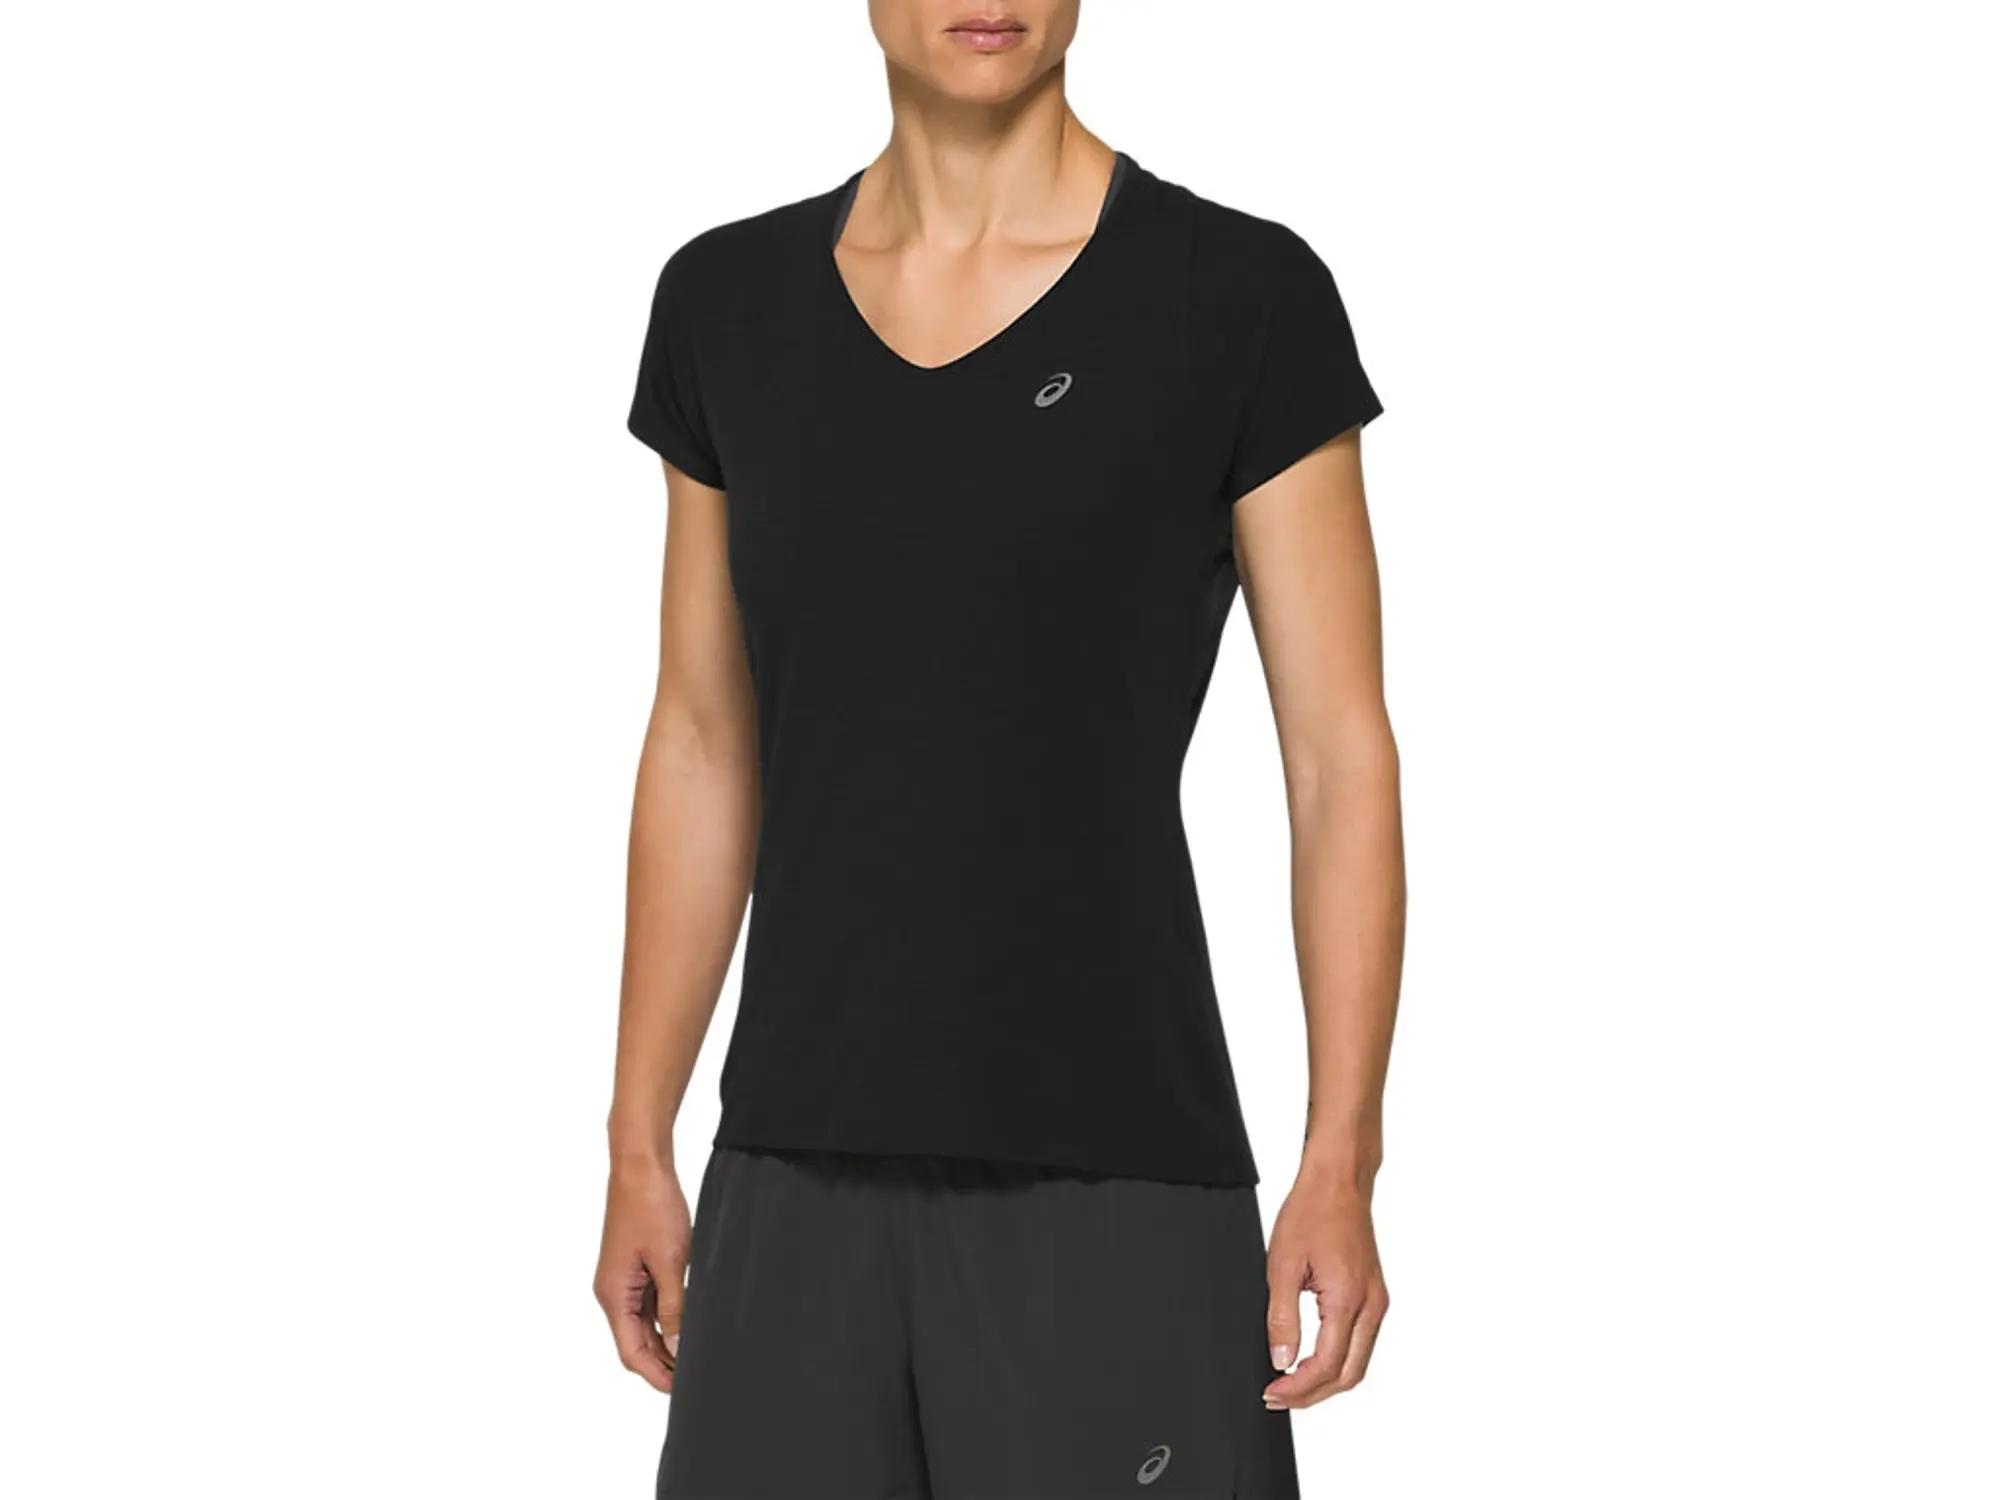 Asics V Neck Short Sleeve T Shirt Womens - Black